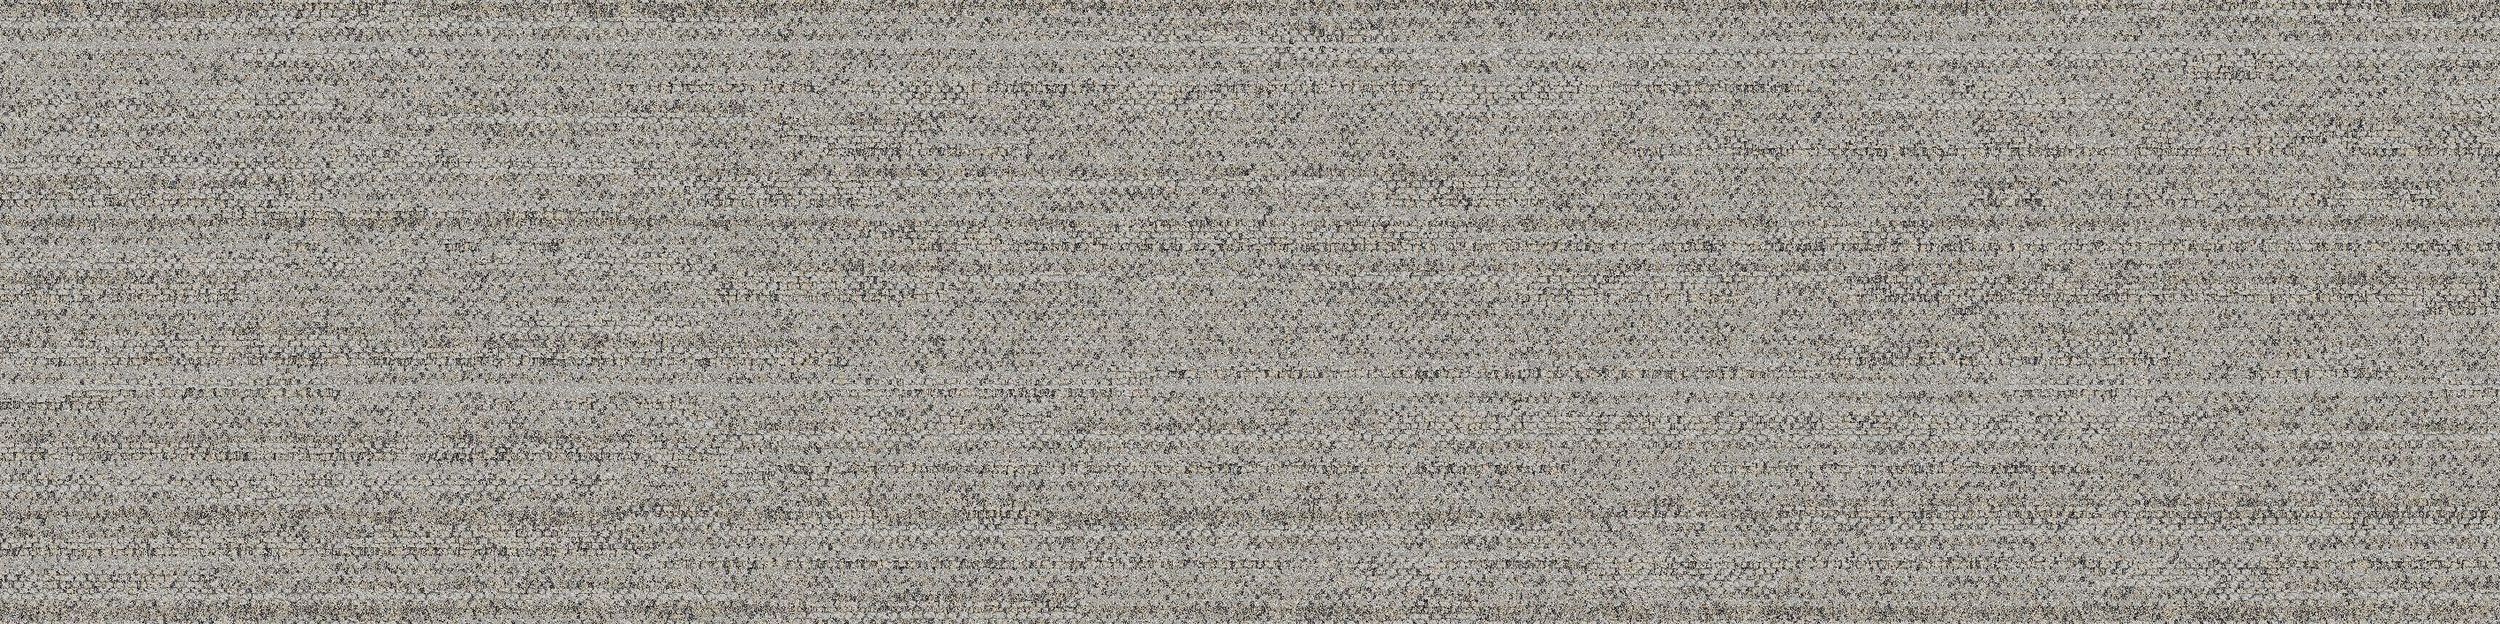 WW880 Carpet Tile In Linen Loom image number 2